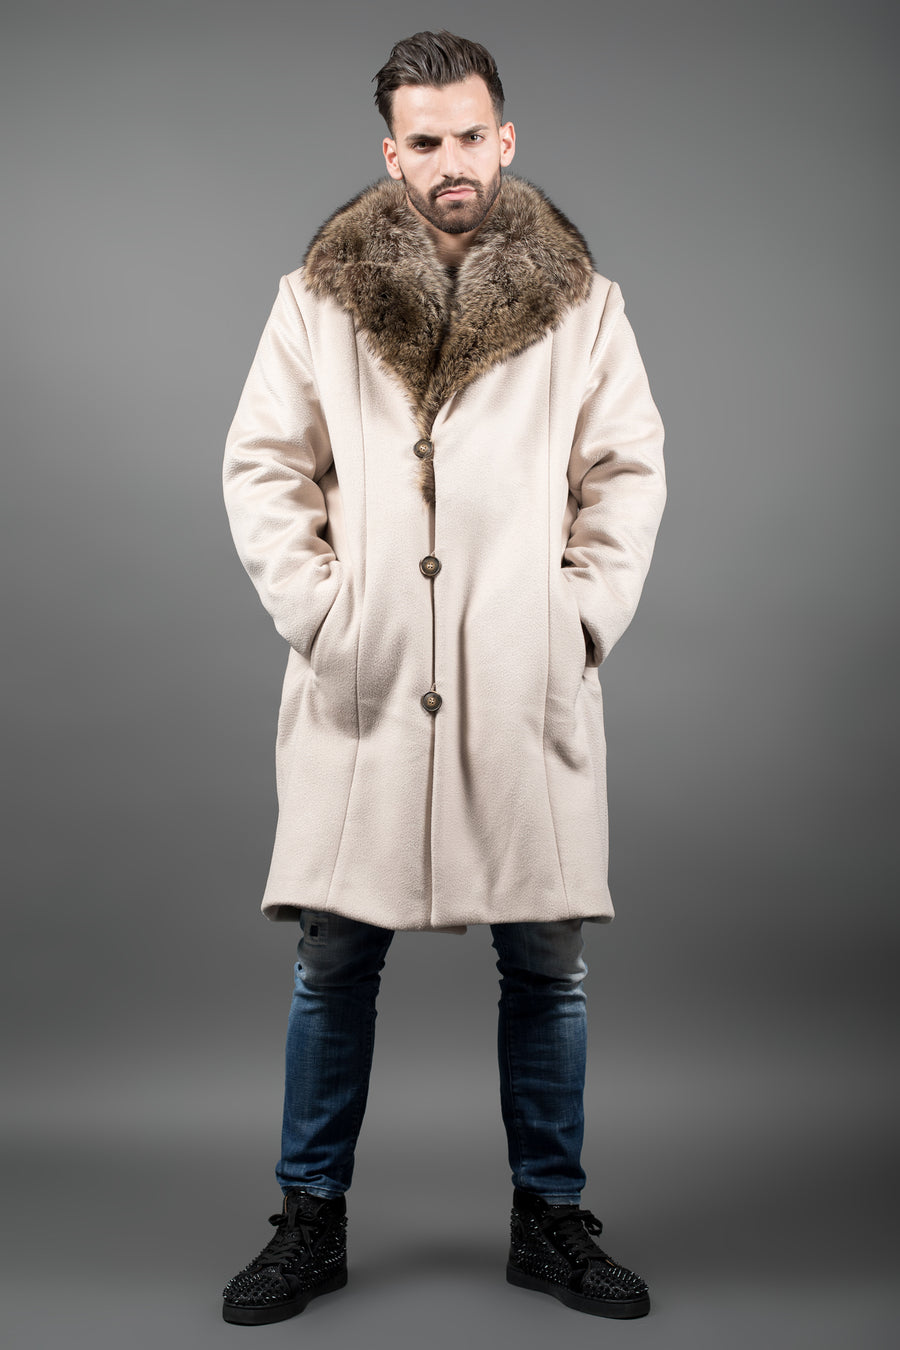 Luxury Racoon fur coat for men – Fur Caravan